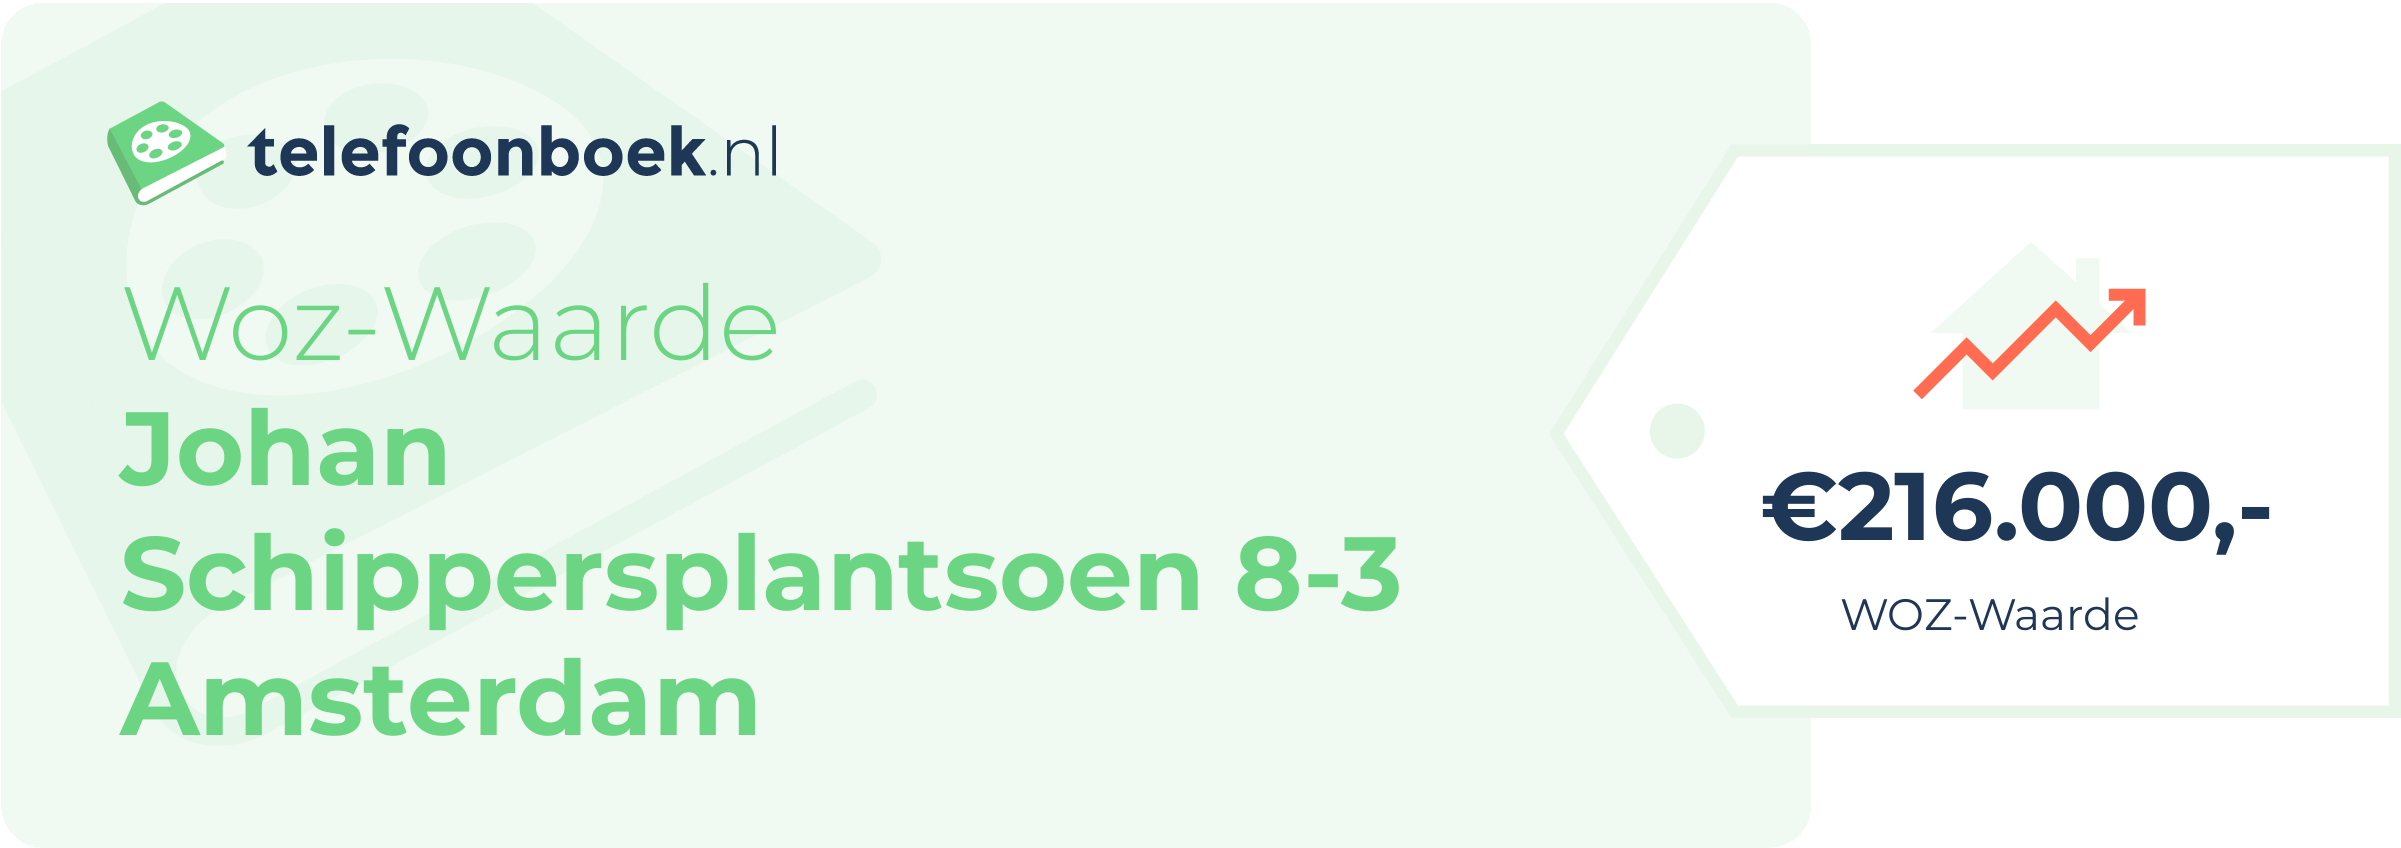 WOZ-waarde Johan Schippersplantsoen 8-3 Amsterdam